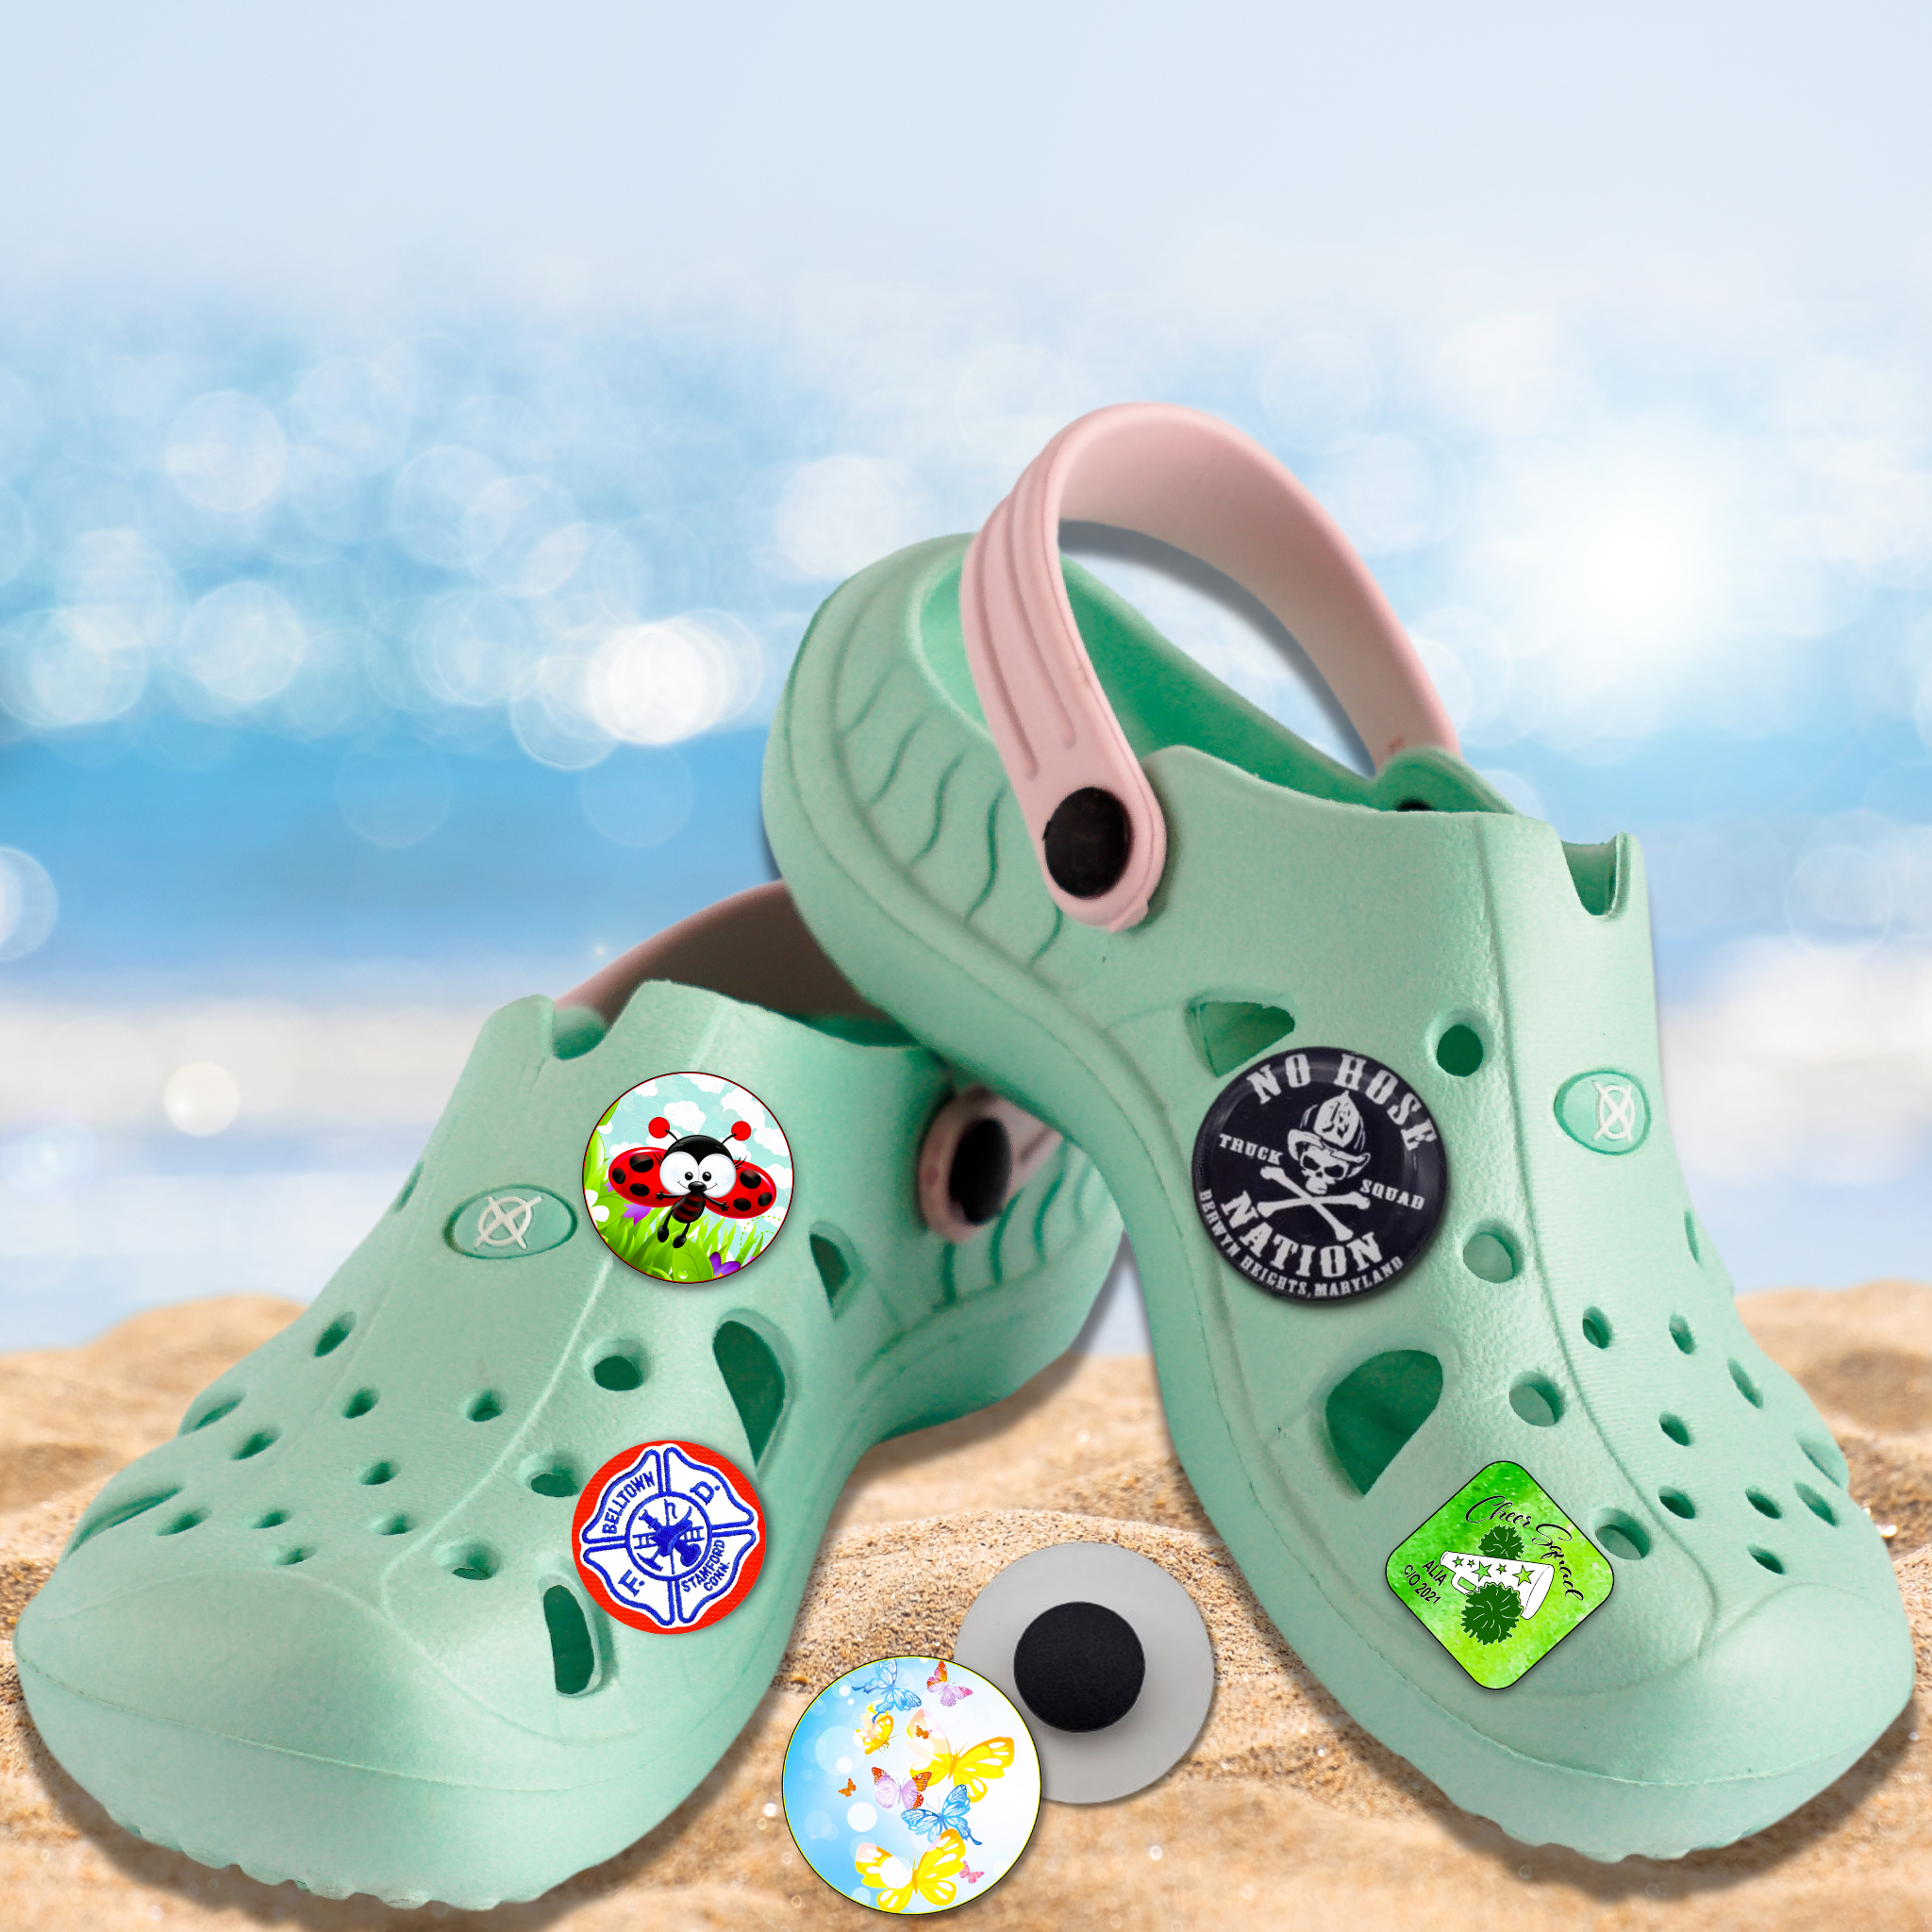 Custom Crocs Charms - Brilliant Promos - Be Brilliant!